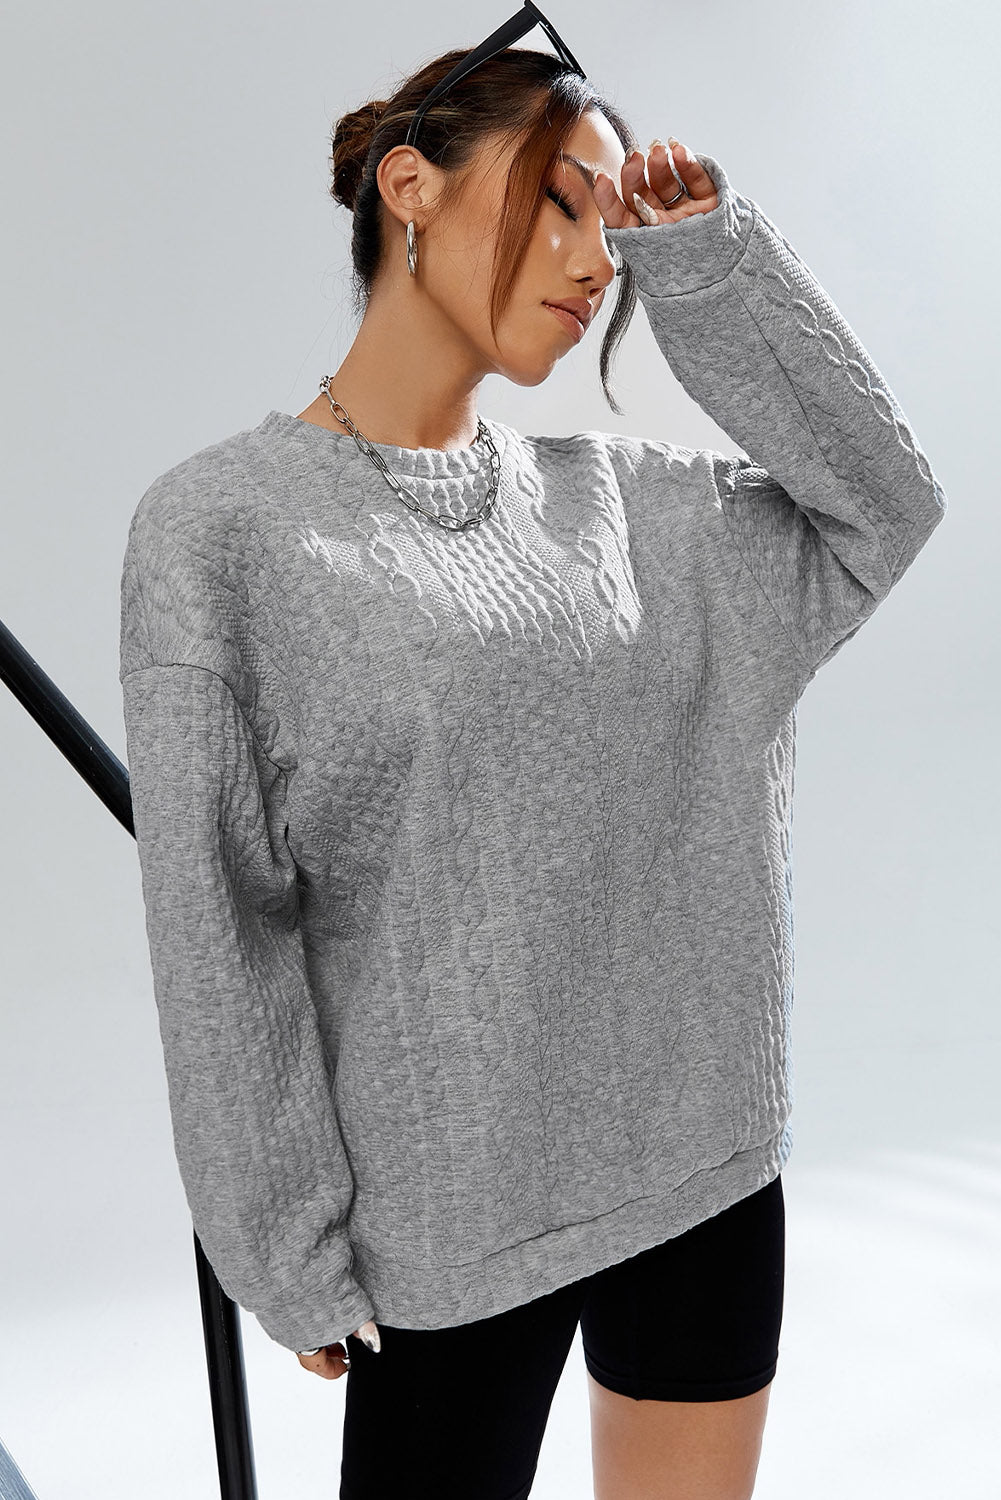 Graues, strukturiertes Pullover-Sweatshirt mit Zopfmuster und überschnittener Schulter